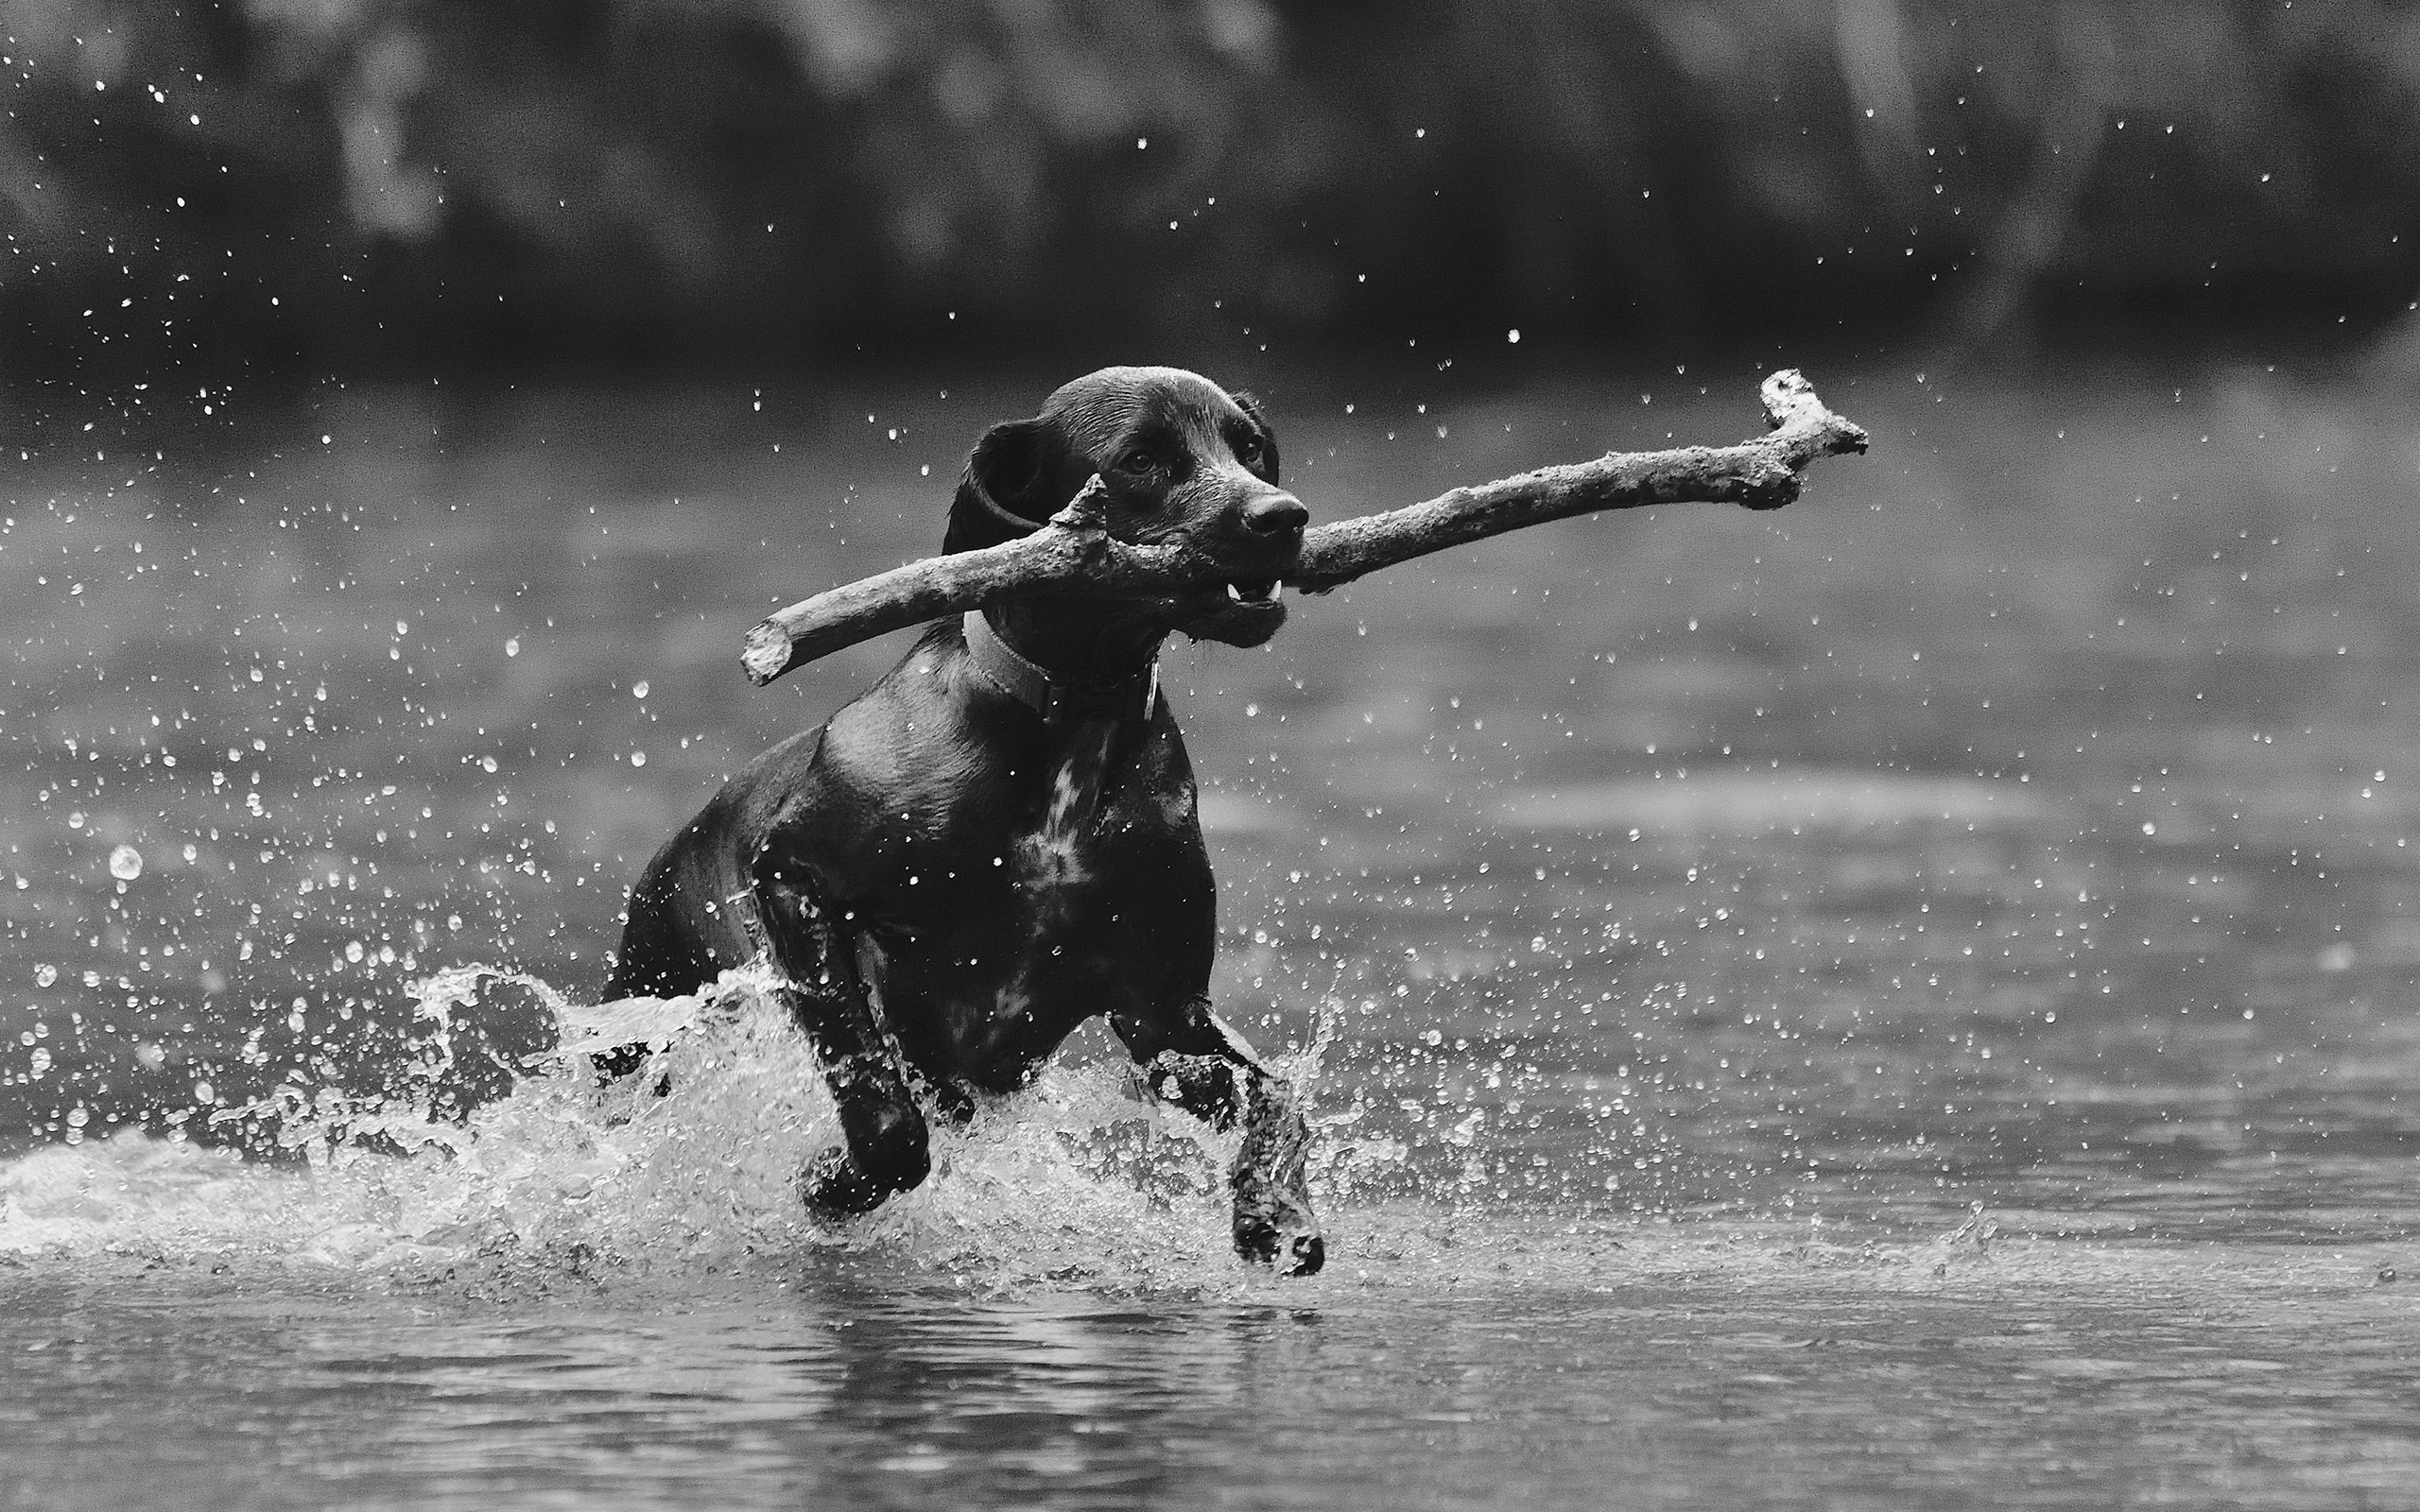 General 2560x1600 animals dog monochrome mammals sticks outdoors in water water wet